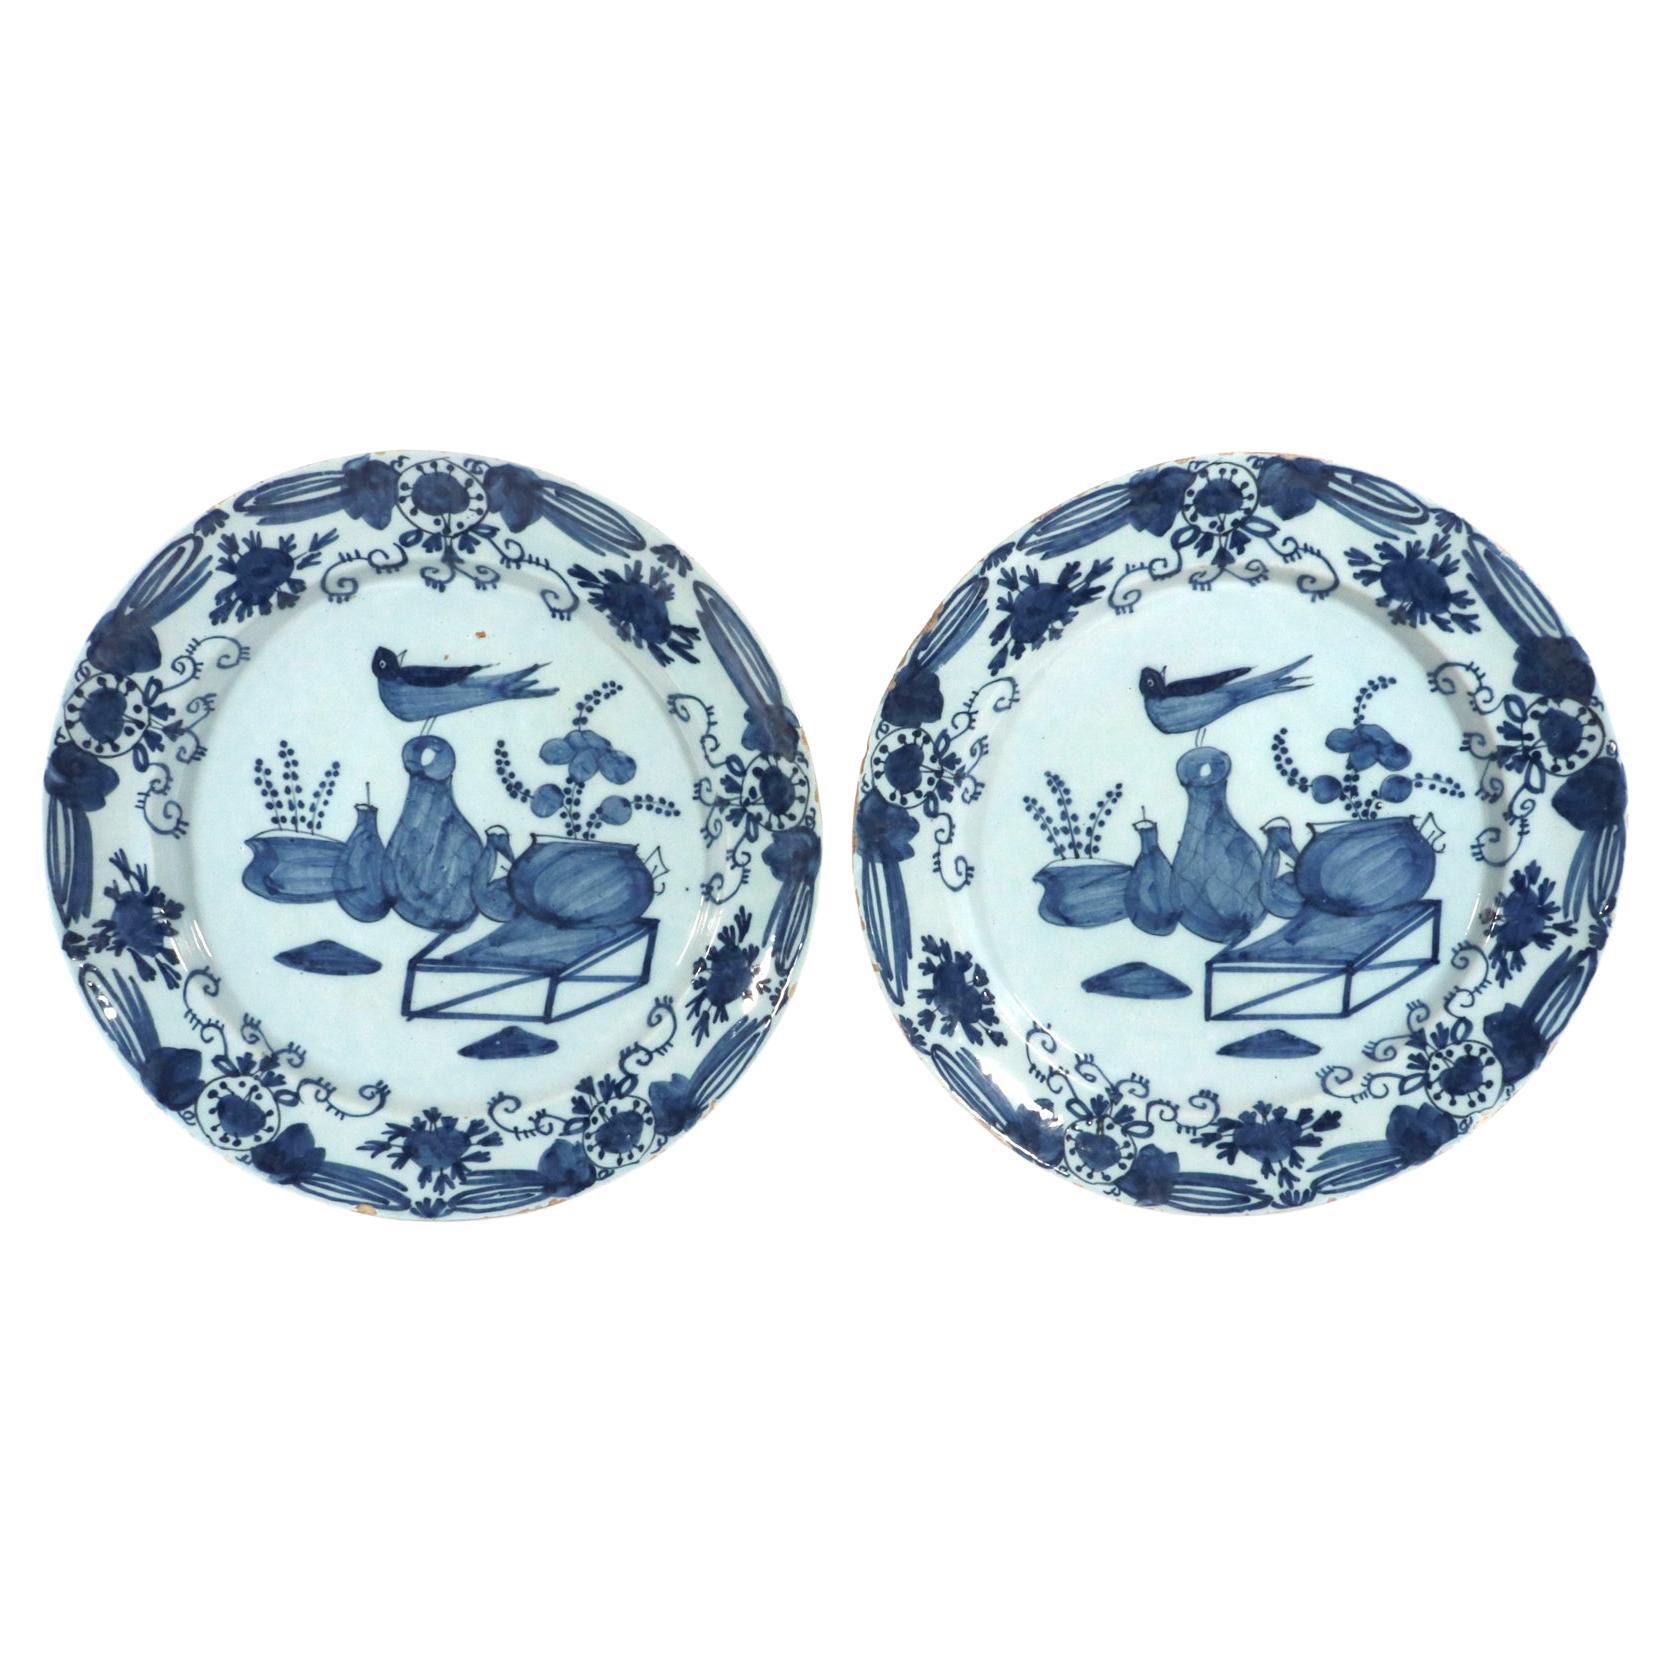 Grands chargeurs de Delft de style chinoiserie bleu et blanc